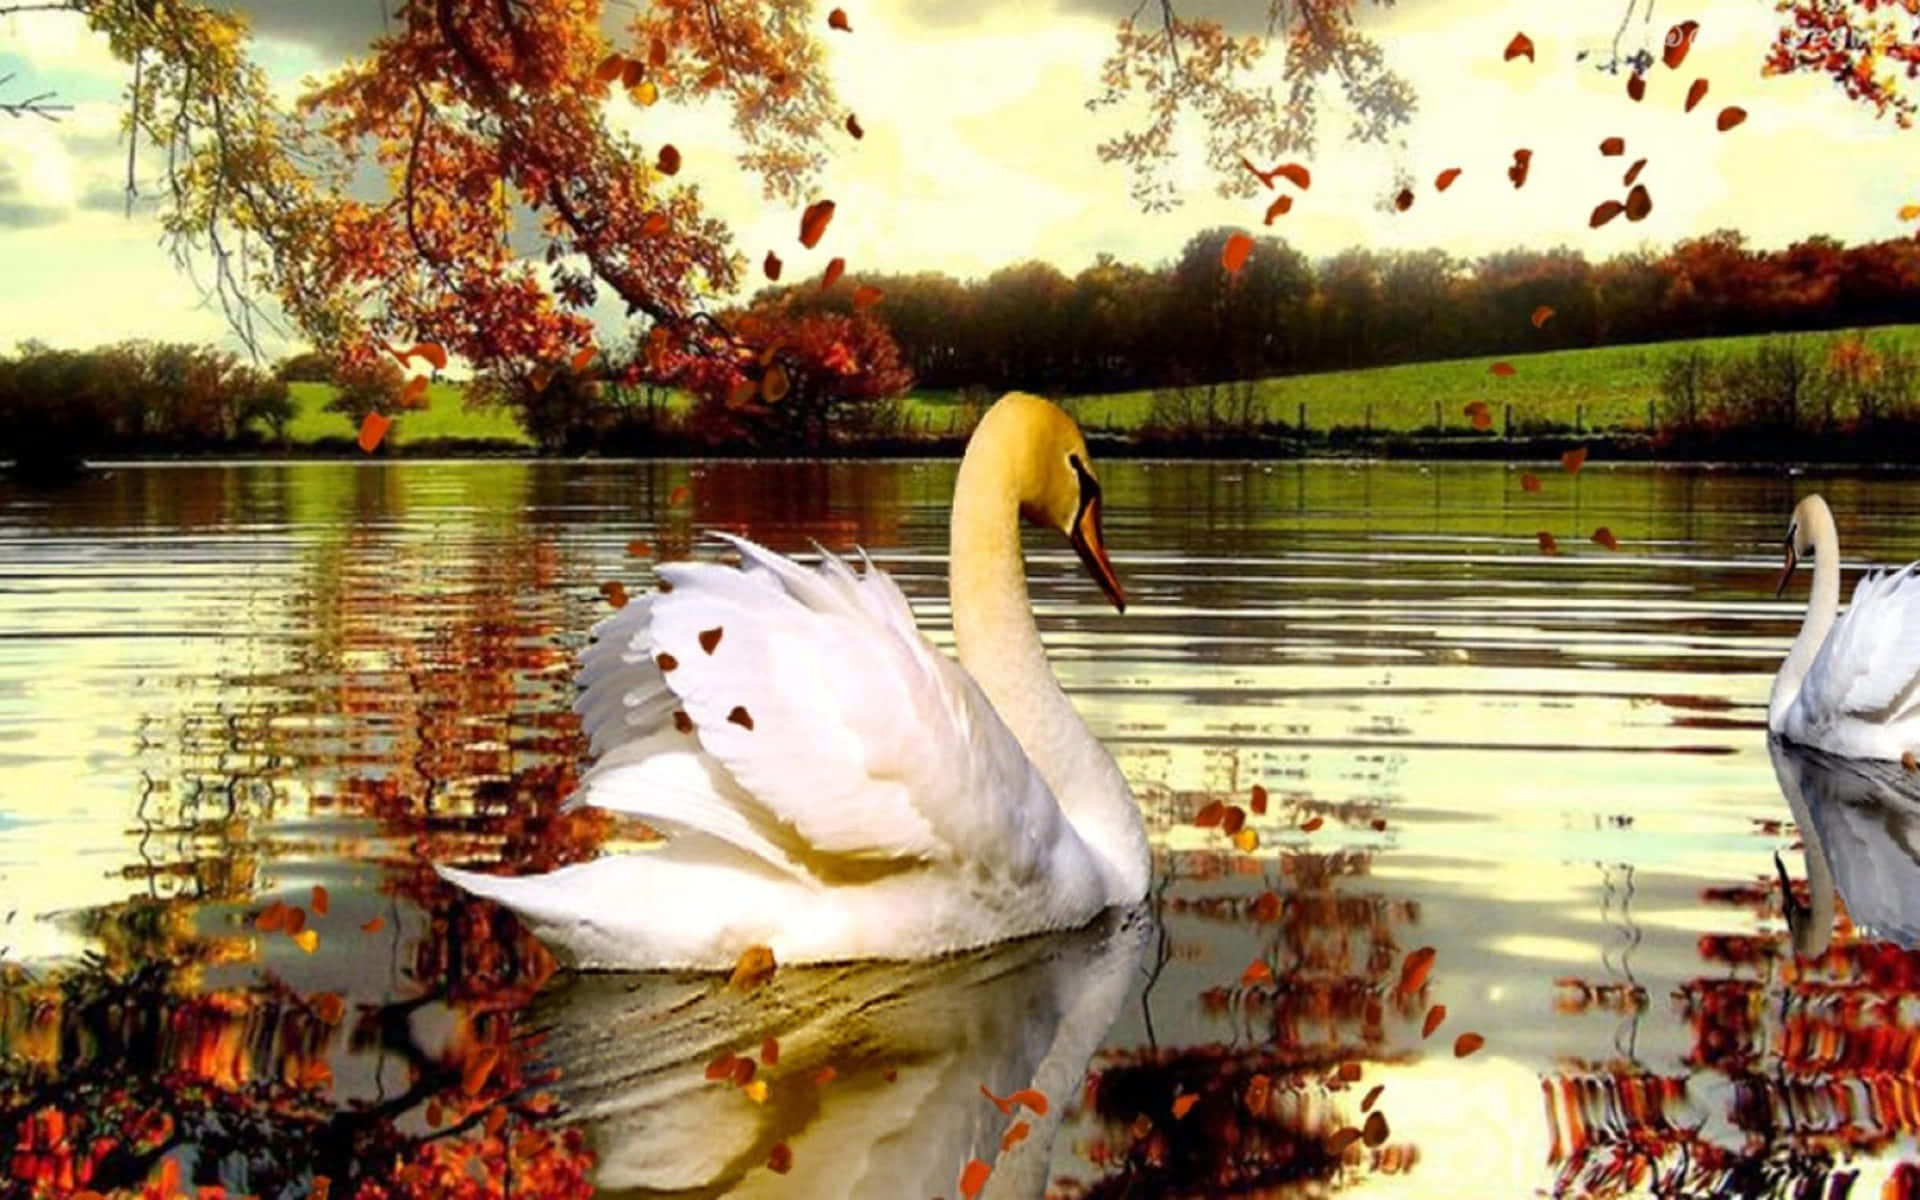 Serene Fall Lake Scenery Wallpaper